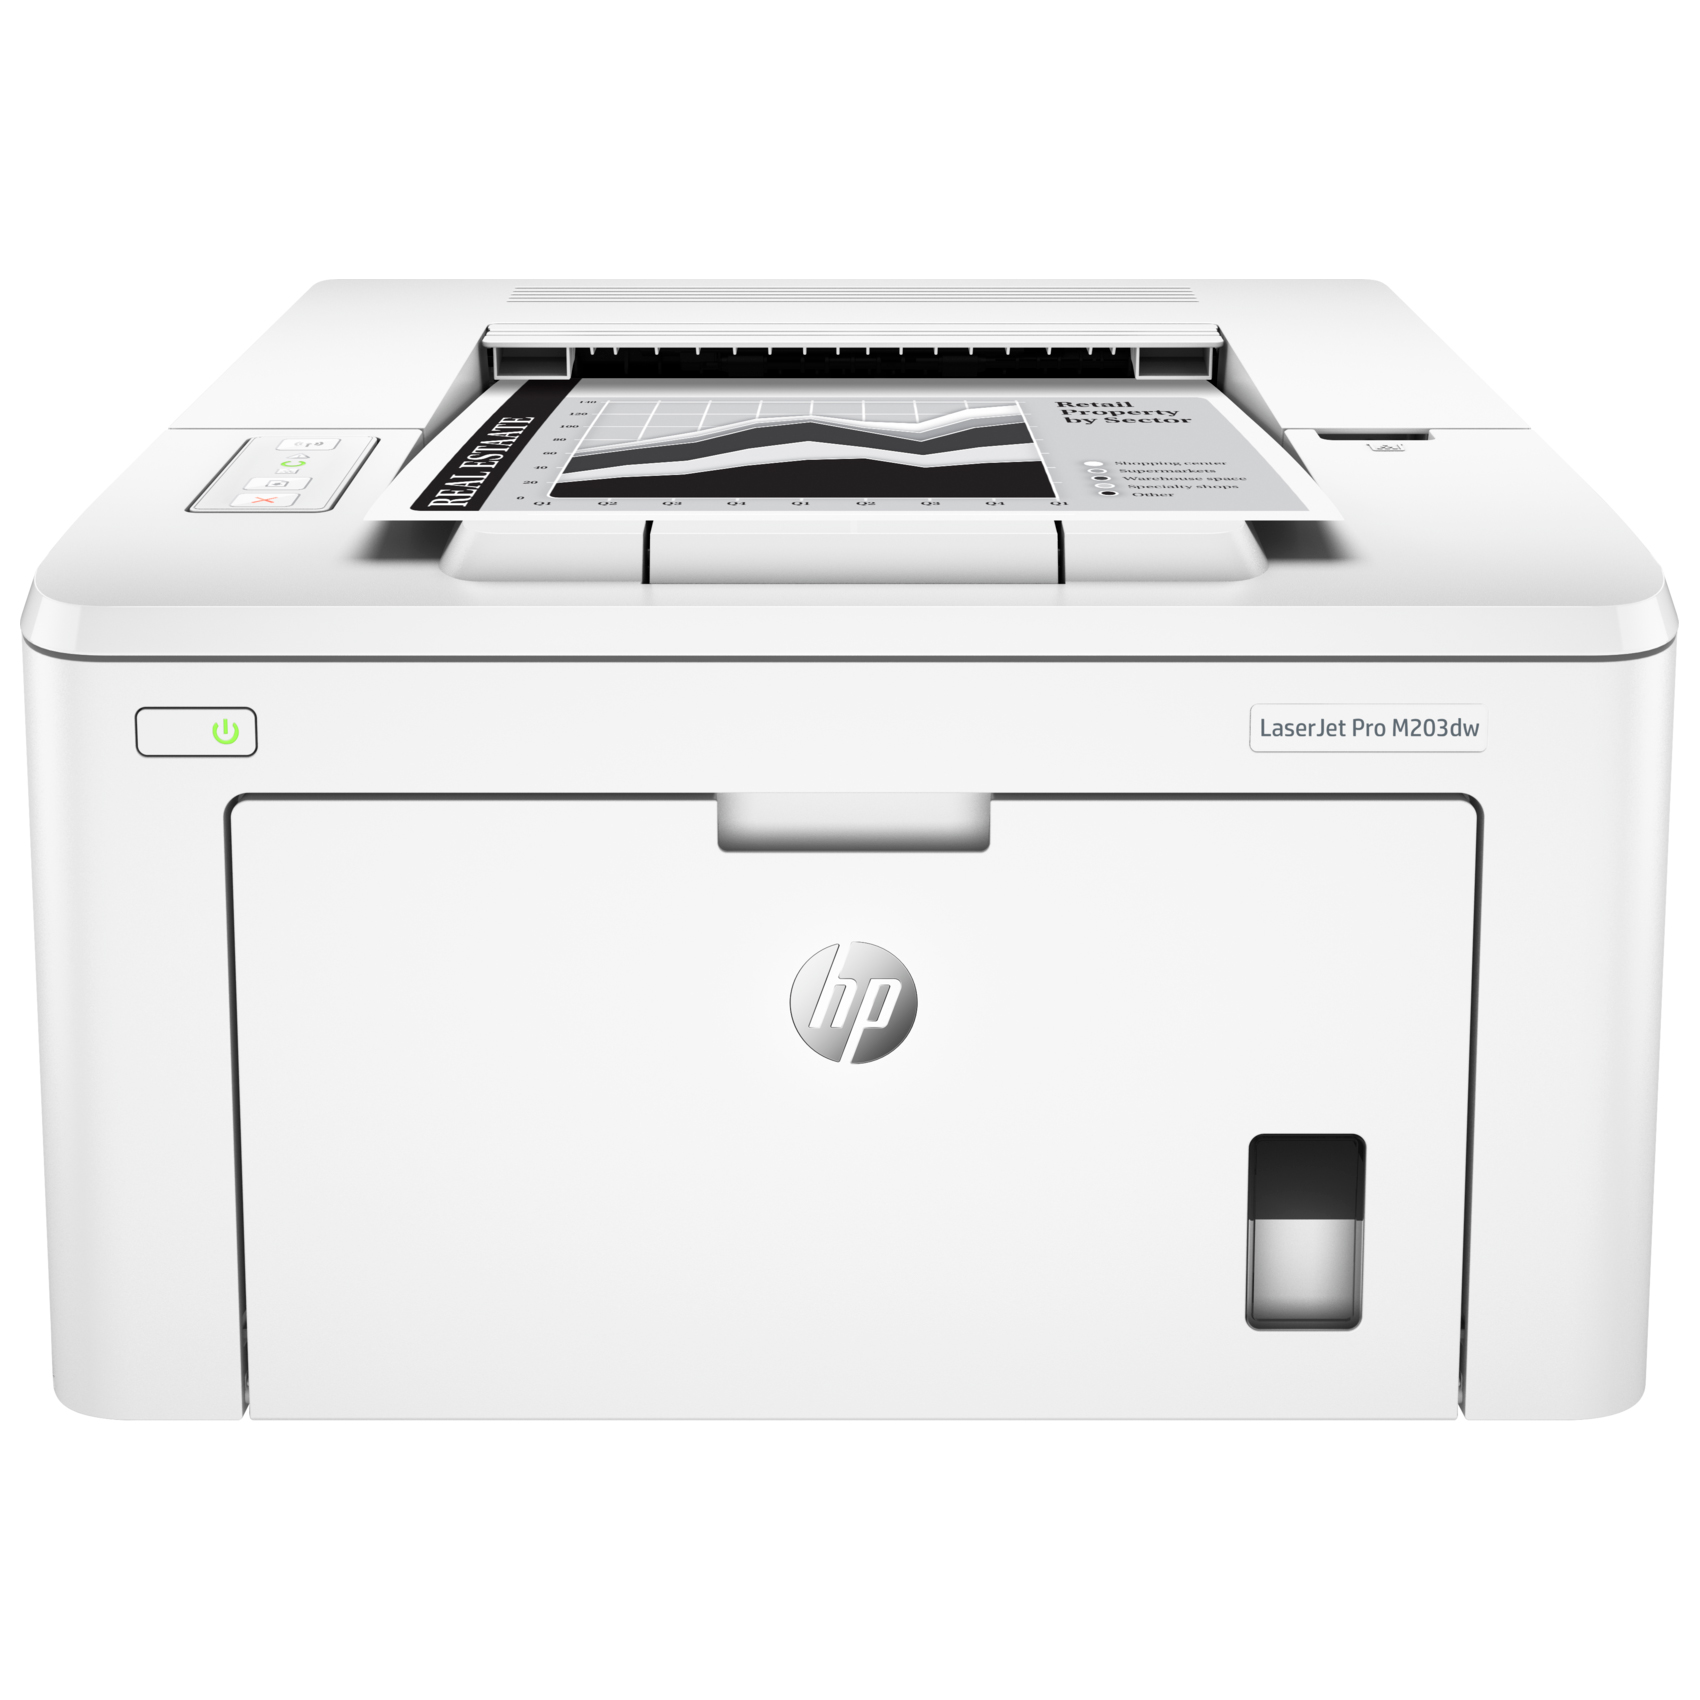 HP M203dw LaserJet Pro Printer